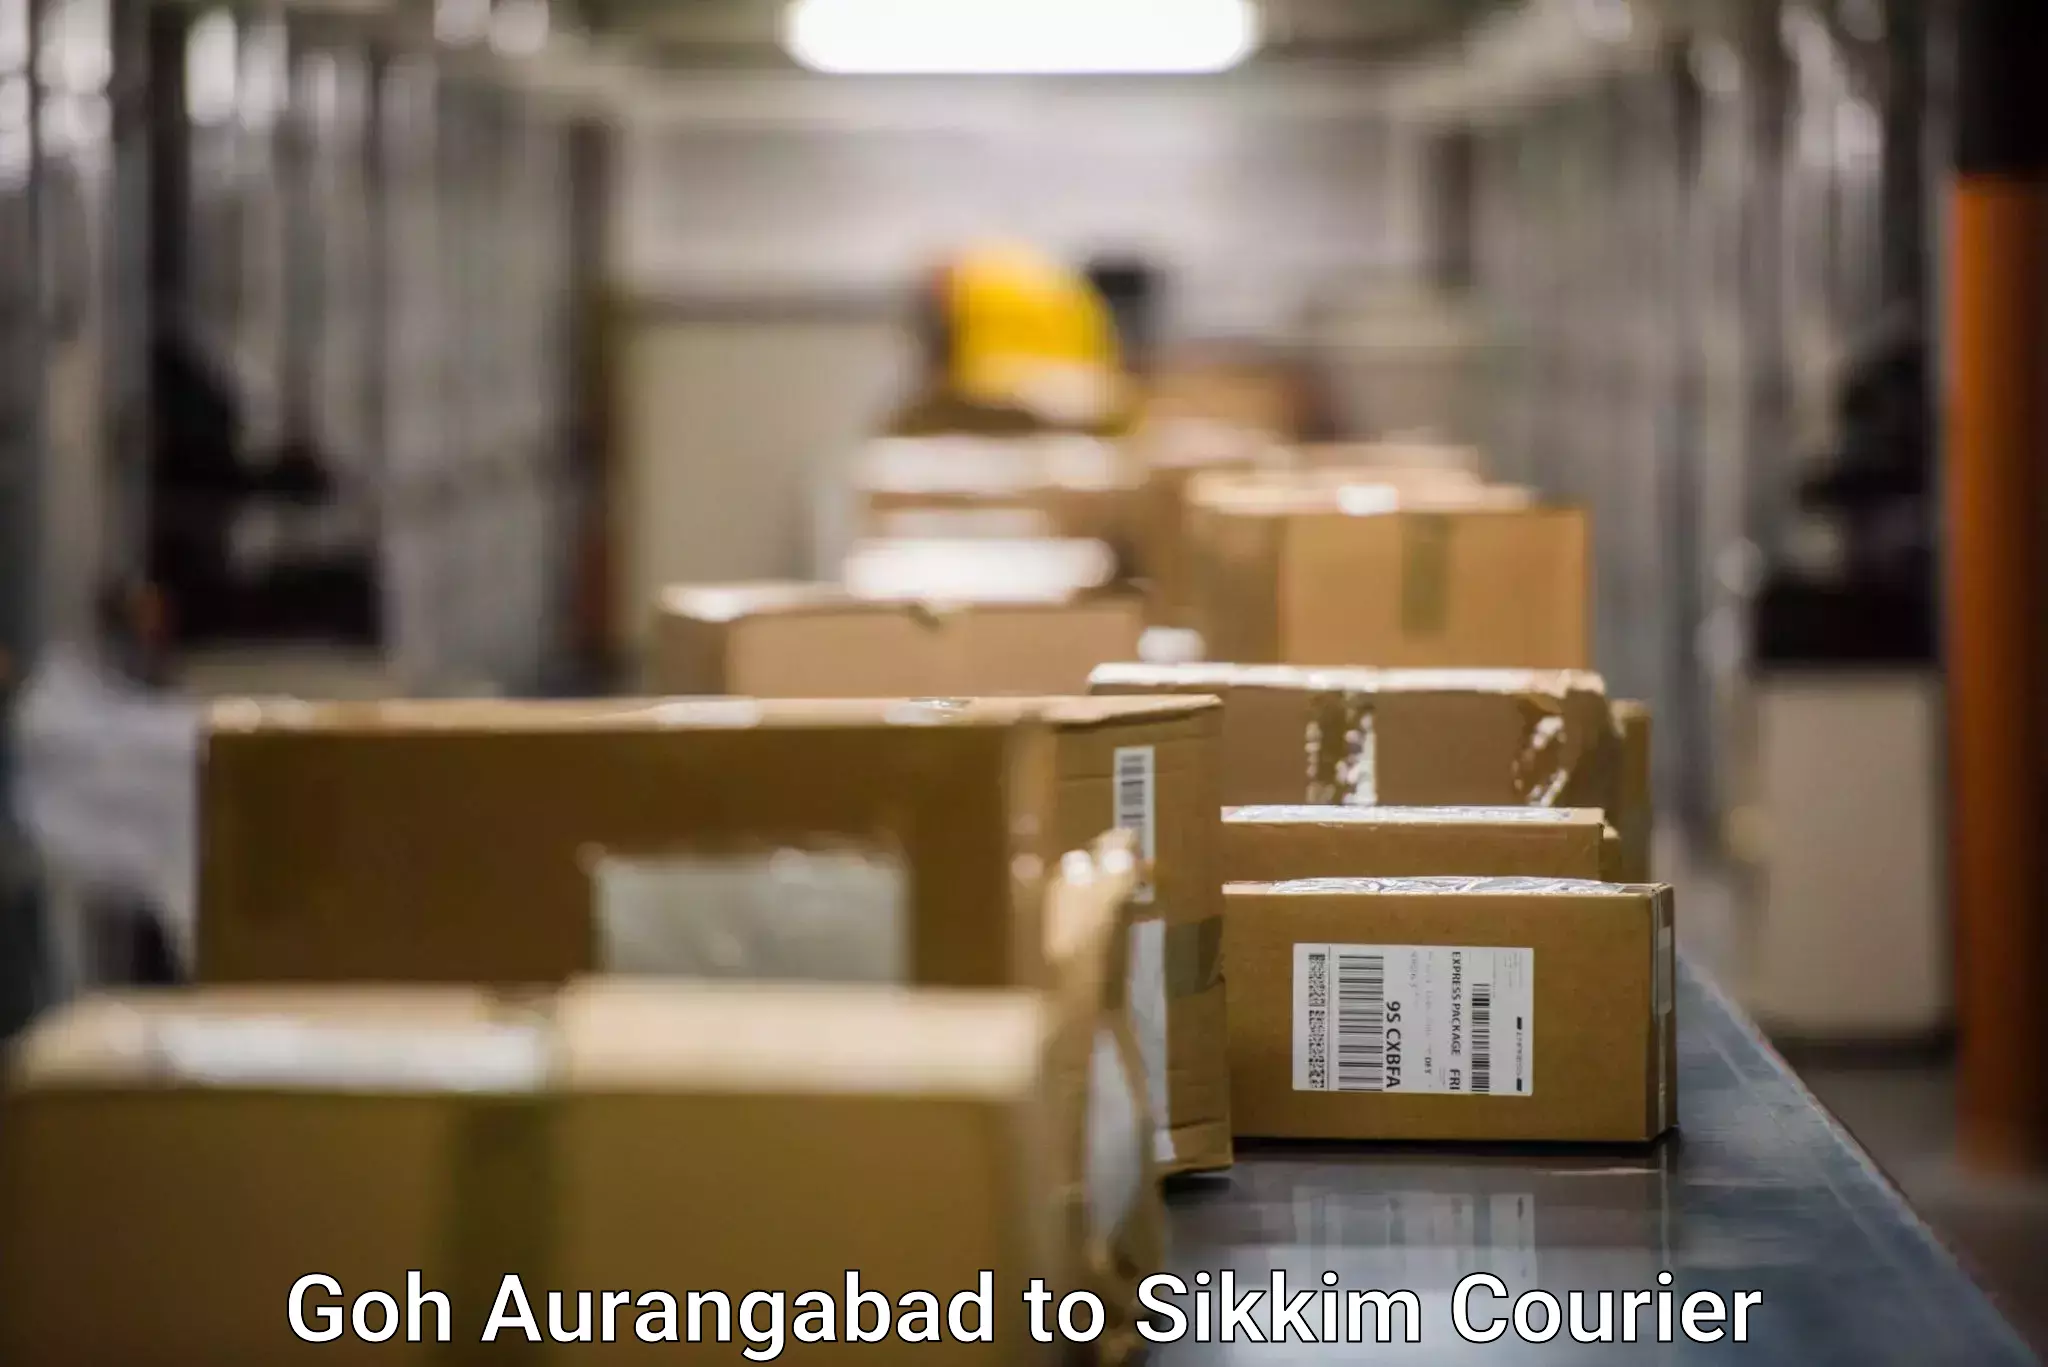 Optimized shipping routes Goh Aurangabad to Ranipool